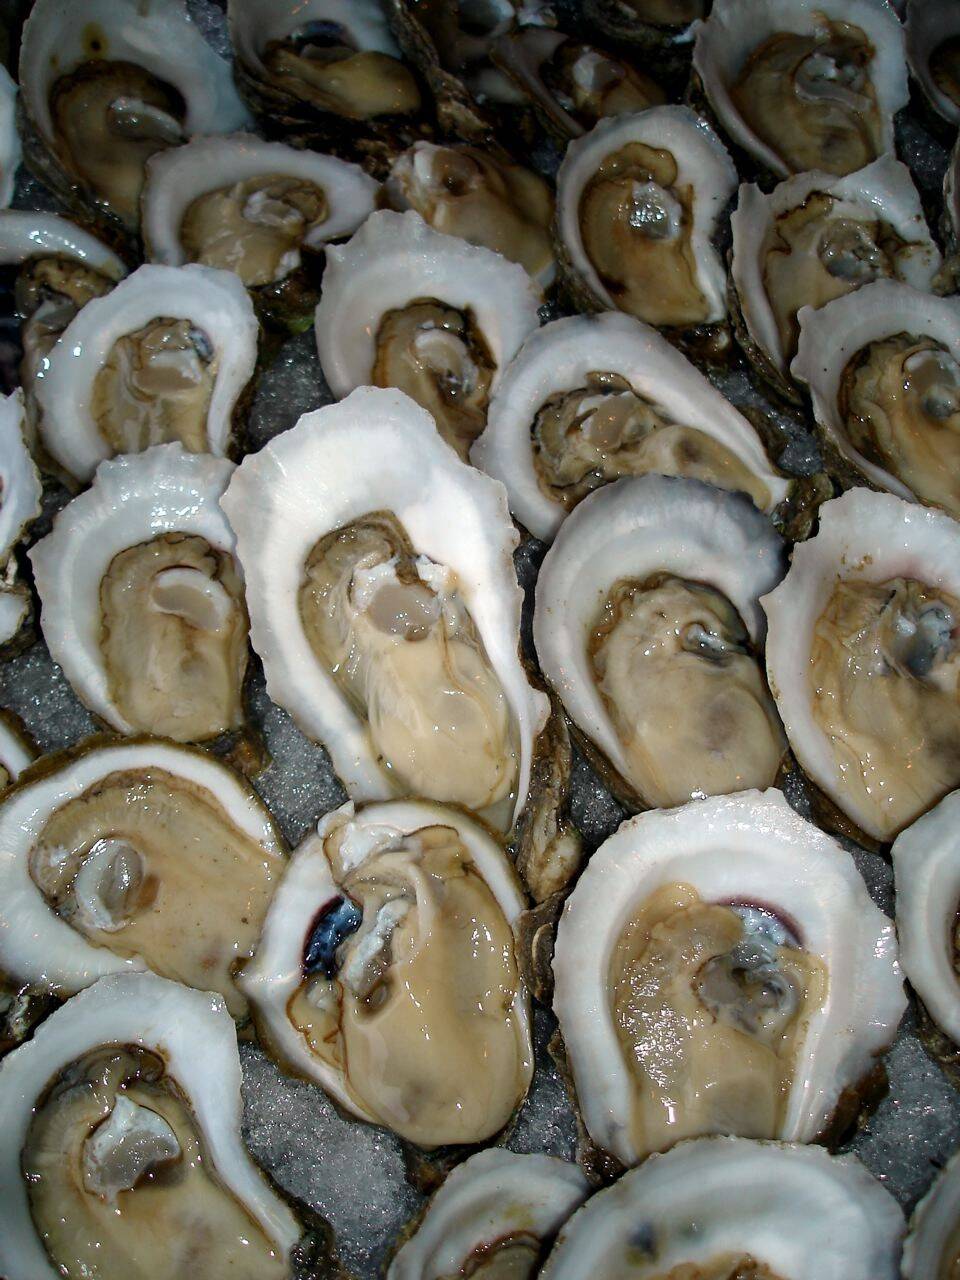 一颗牡蛎中竟发现10颗珍珠 幸运男子意外赚大发